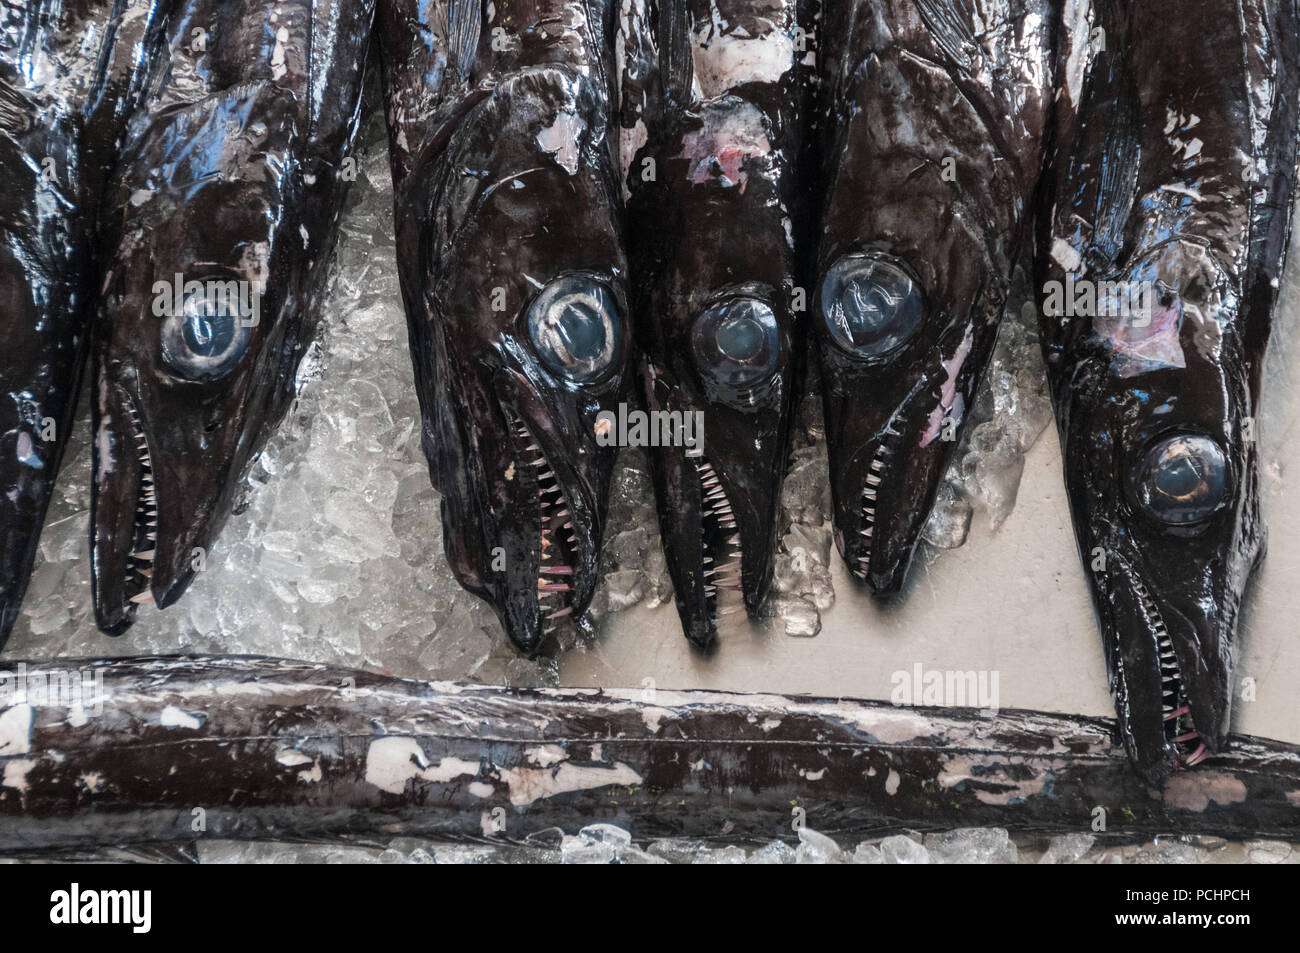 Black Scabbard fish in the Mercado dos Lavradores, Funchal, Madeira Stock Photo